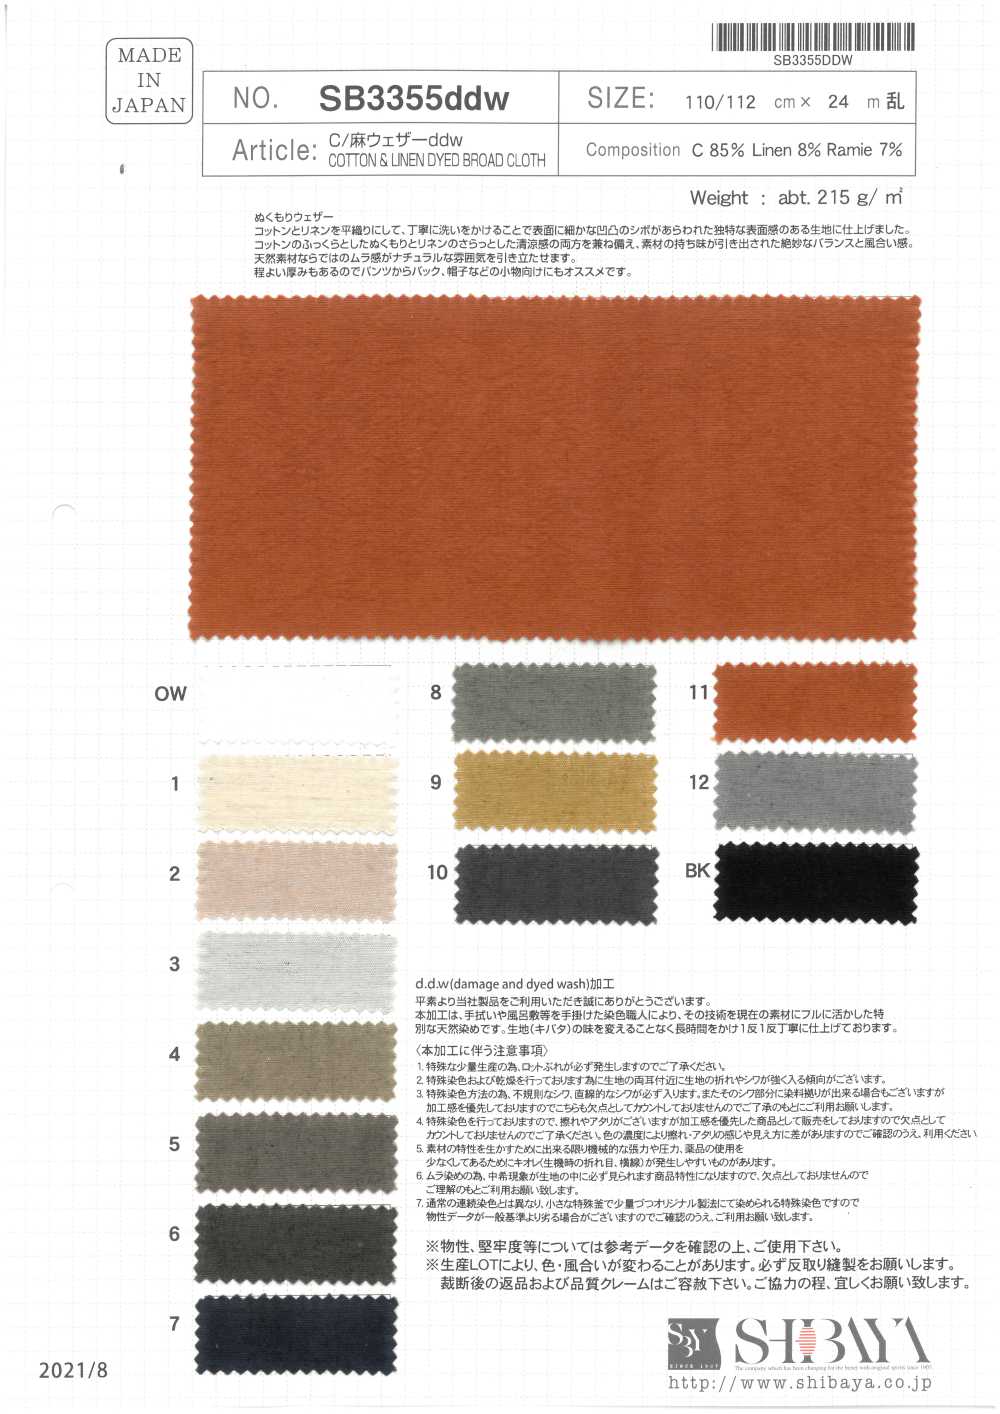 SB3355ddw Cotton/ Linen Weather Cloth Ddw[Textile / Fabric] SHIBAYA